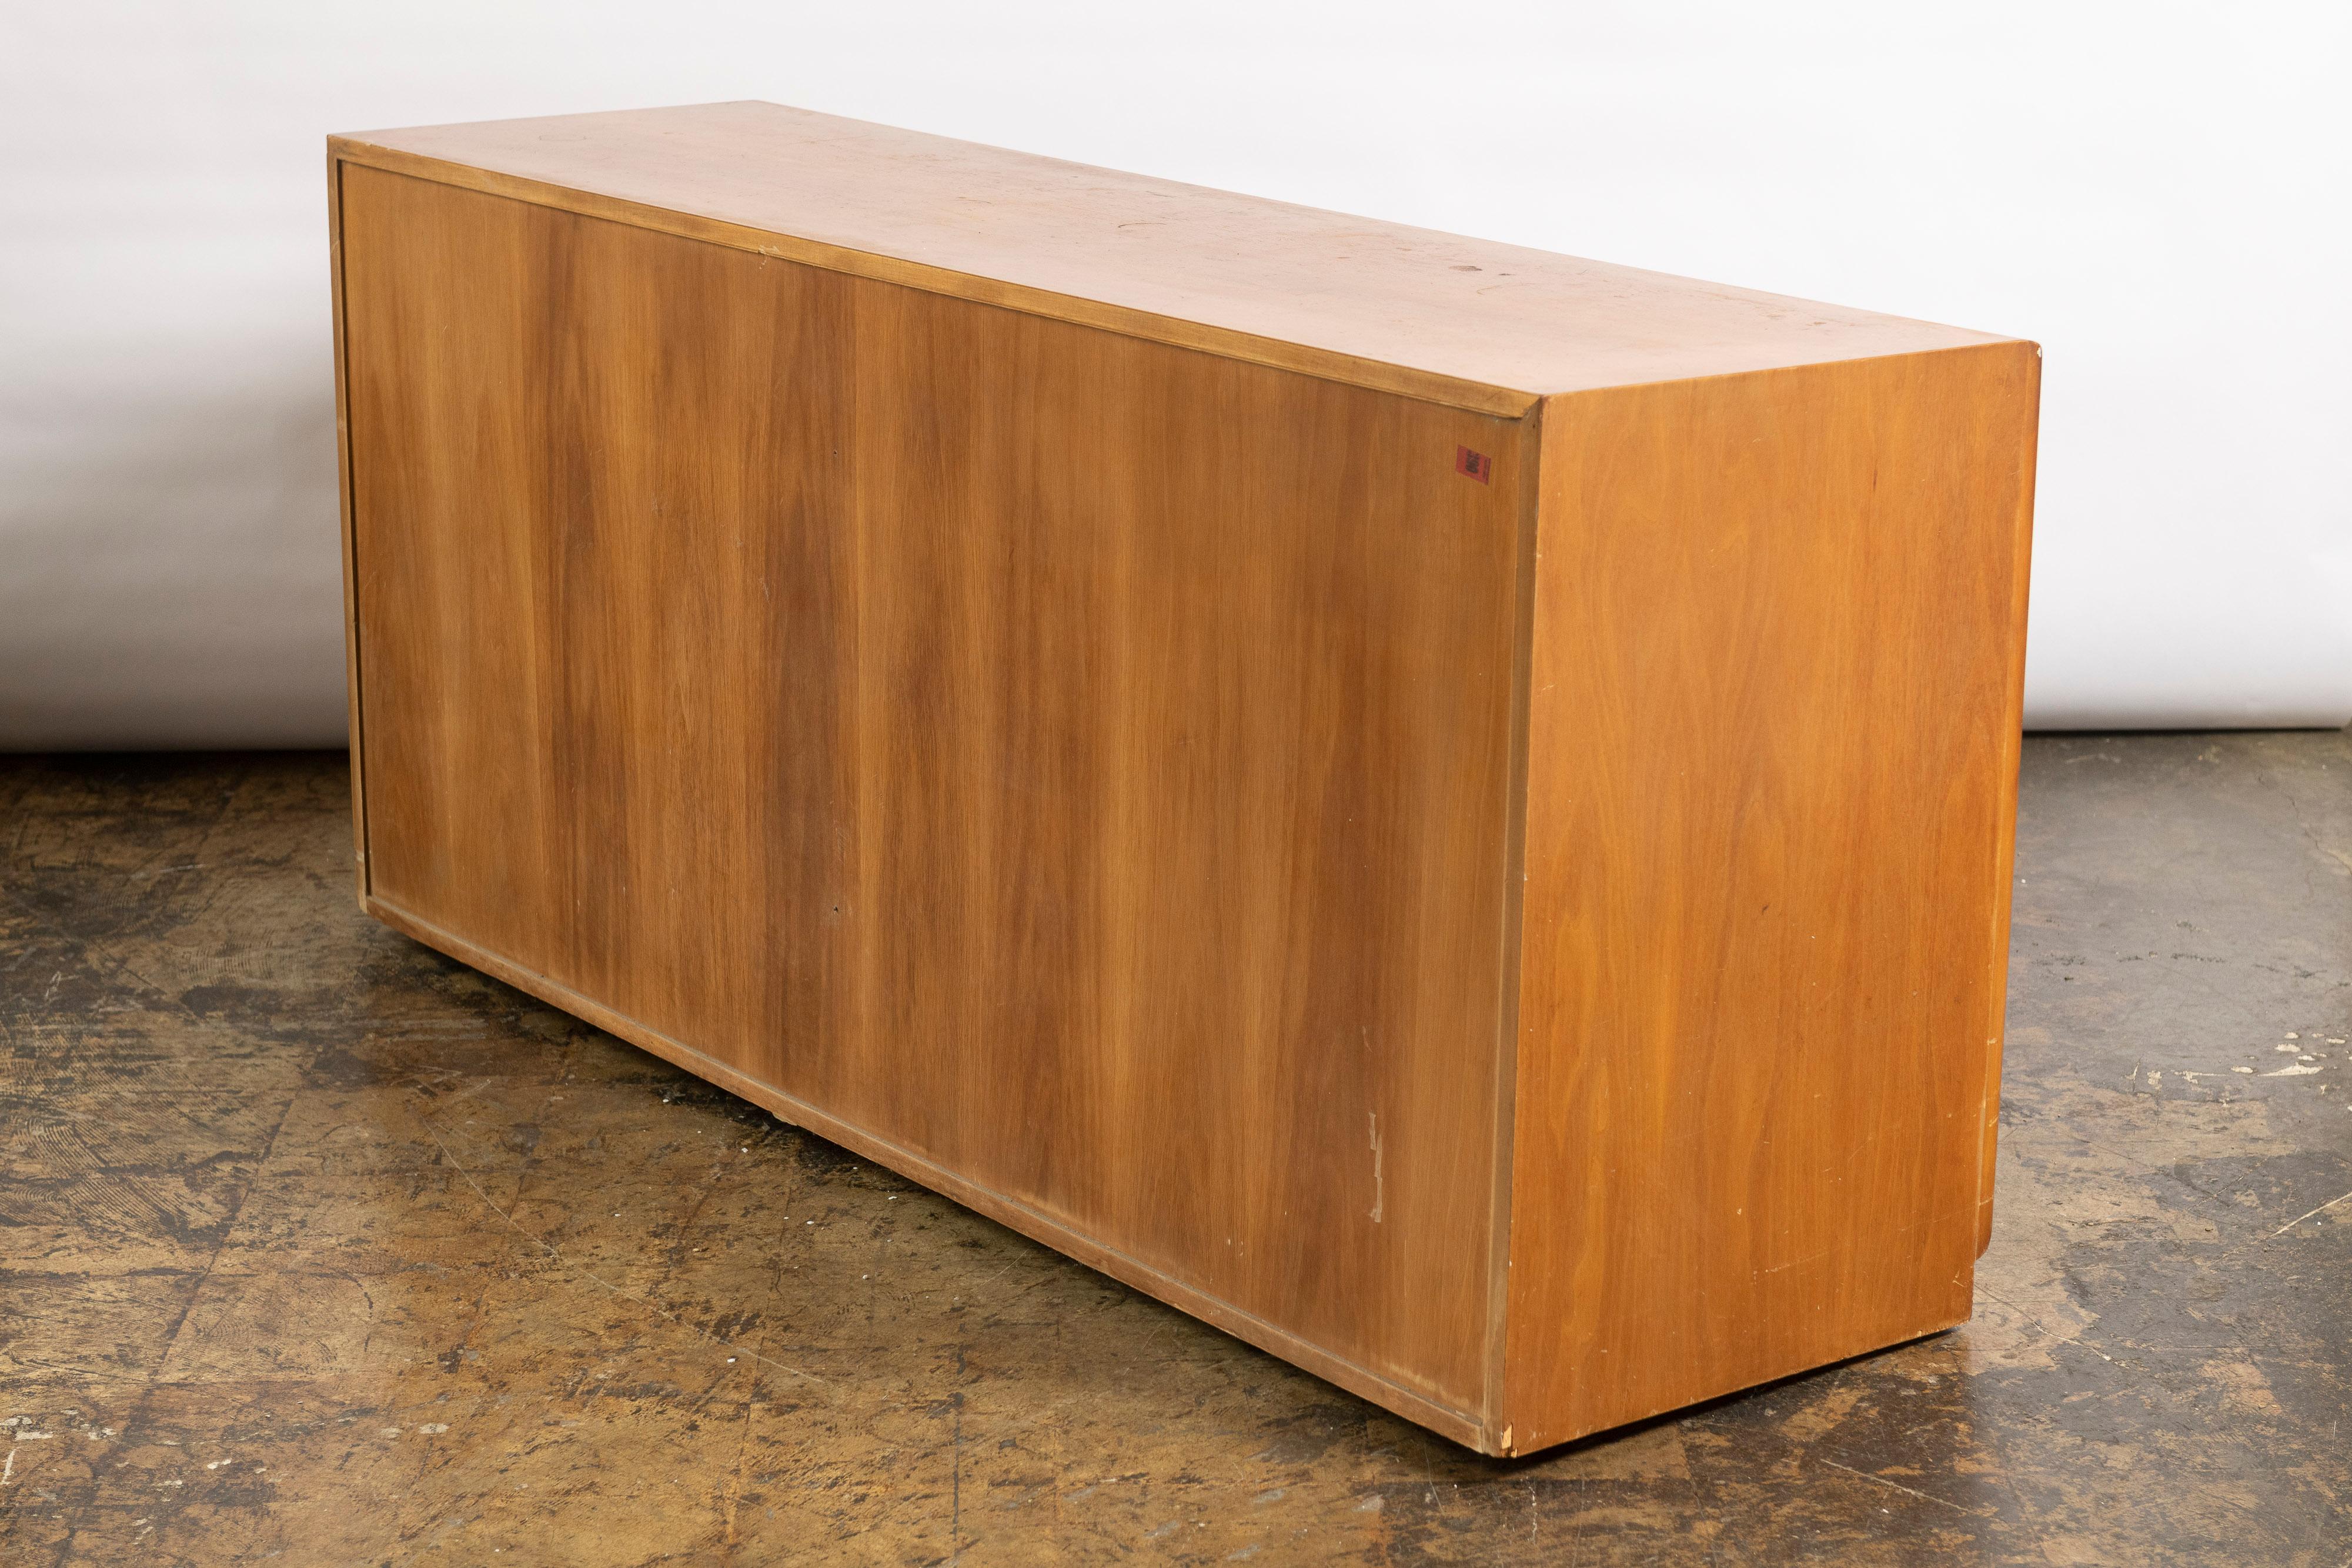 Superbe commode/crédence double à six tiroirs conçue par AT&T. Robsjohn Gibbings pour Widdicomb Furniture en teck. La commode comporte deux rangées de trois tiroirs, y compris des séparateurs dans quelques tiroirs, offrant ainsi un espace de